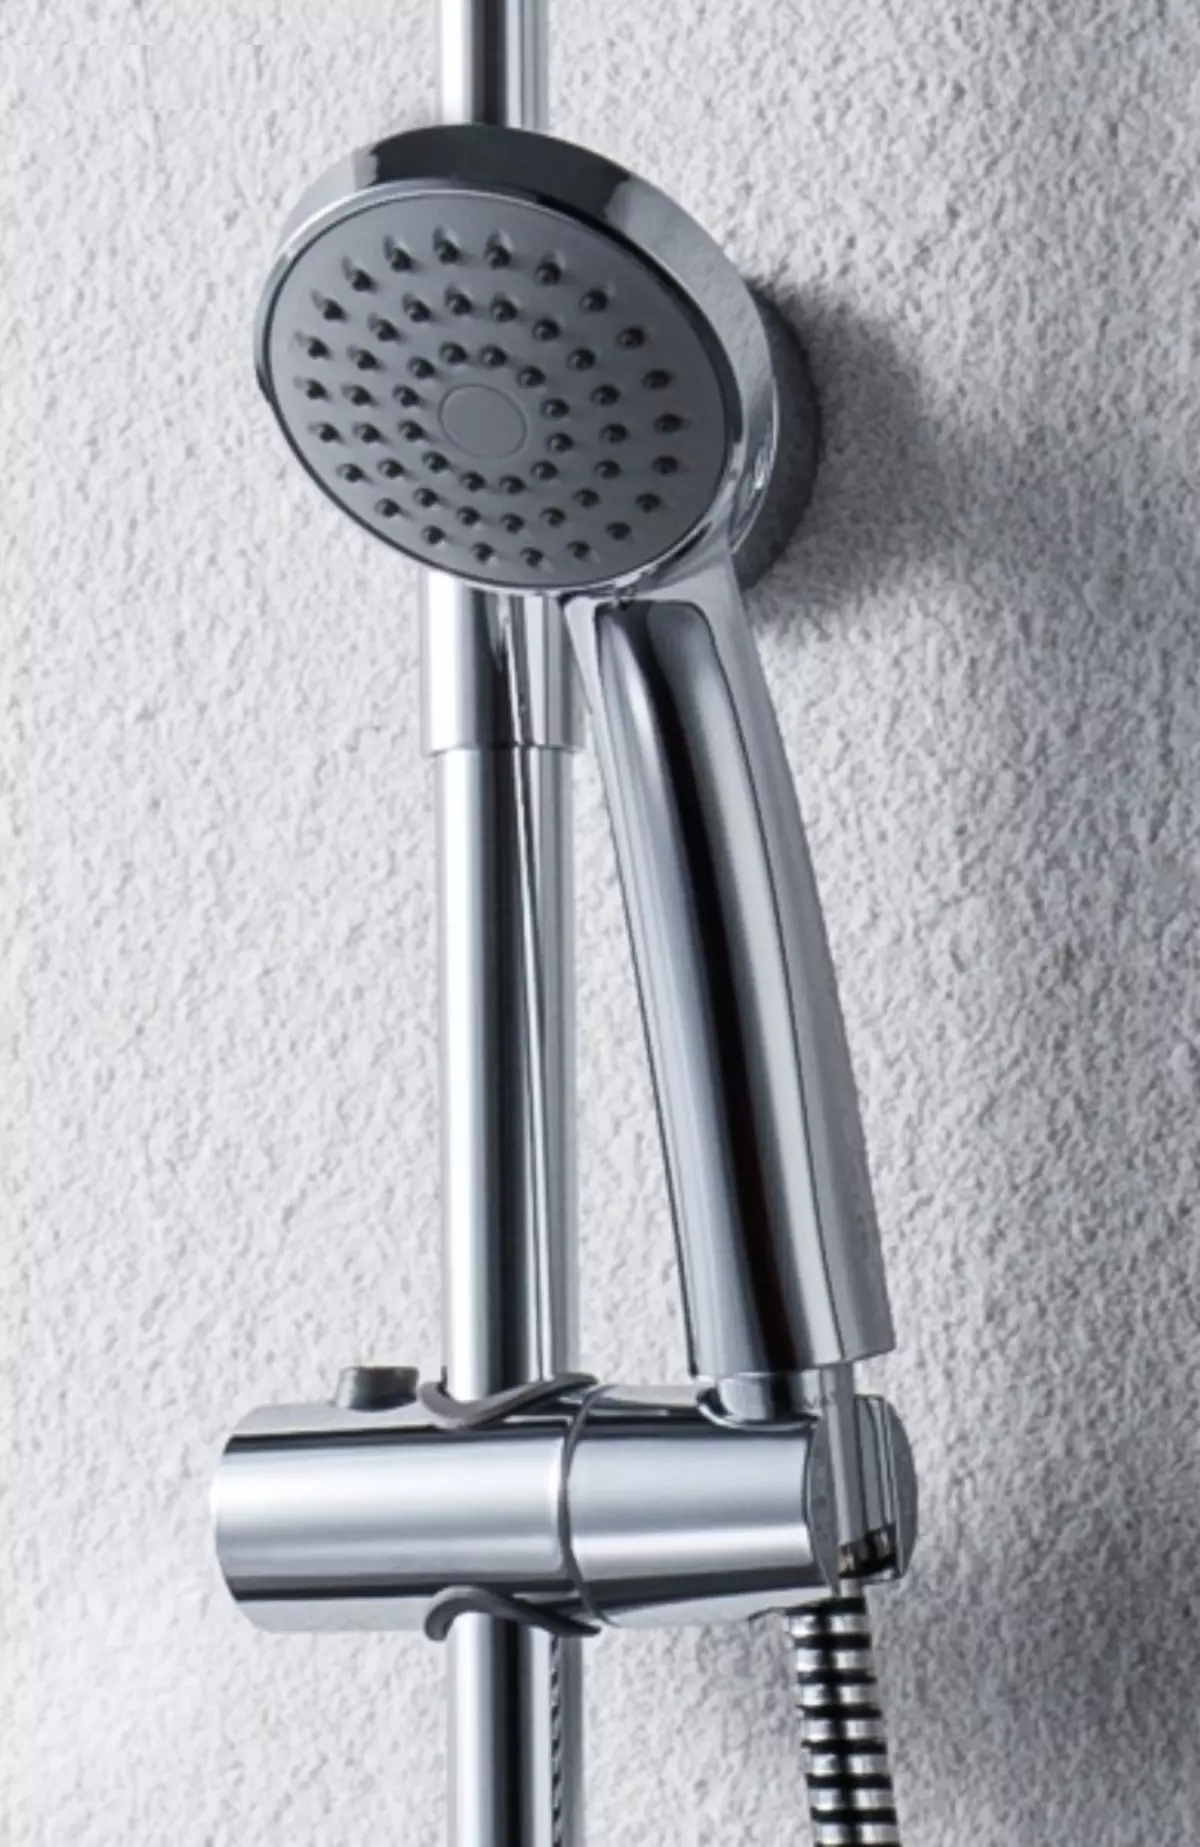 Giá tắm với chính tả: Hệ thống tắm với vòi hoa sen trên cùng, bảng điều khiển có xoắn dài và xoay, lựa chọn tai nghe 10377_13